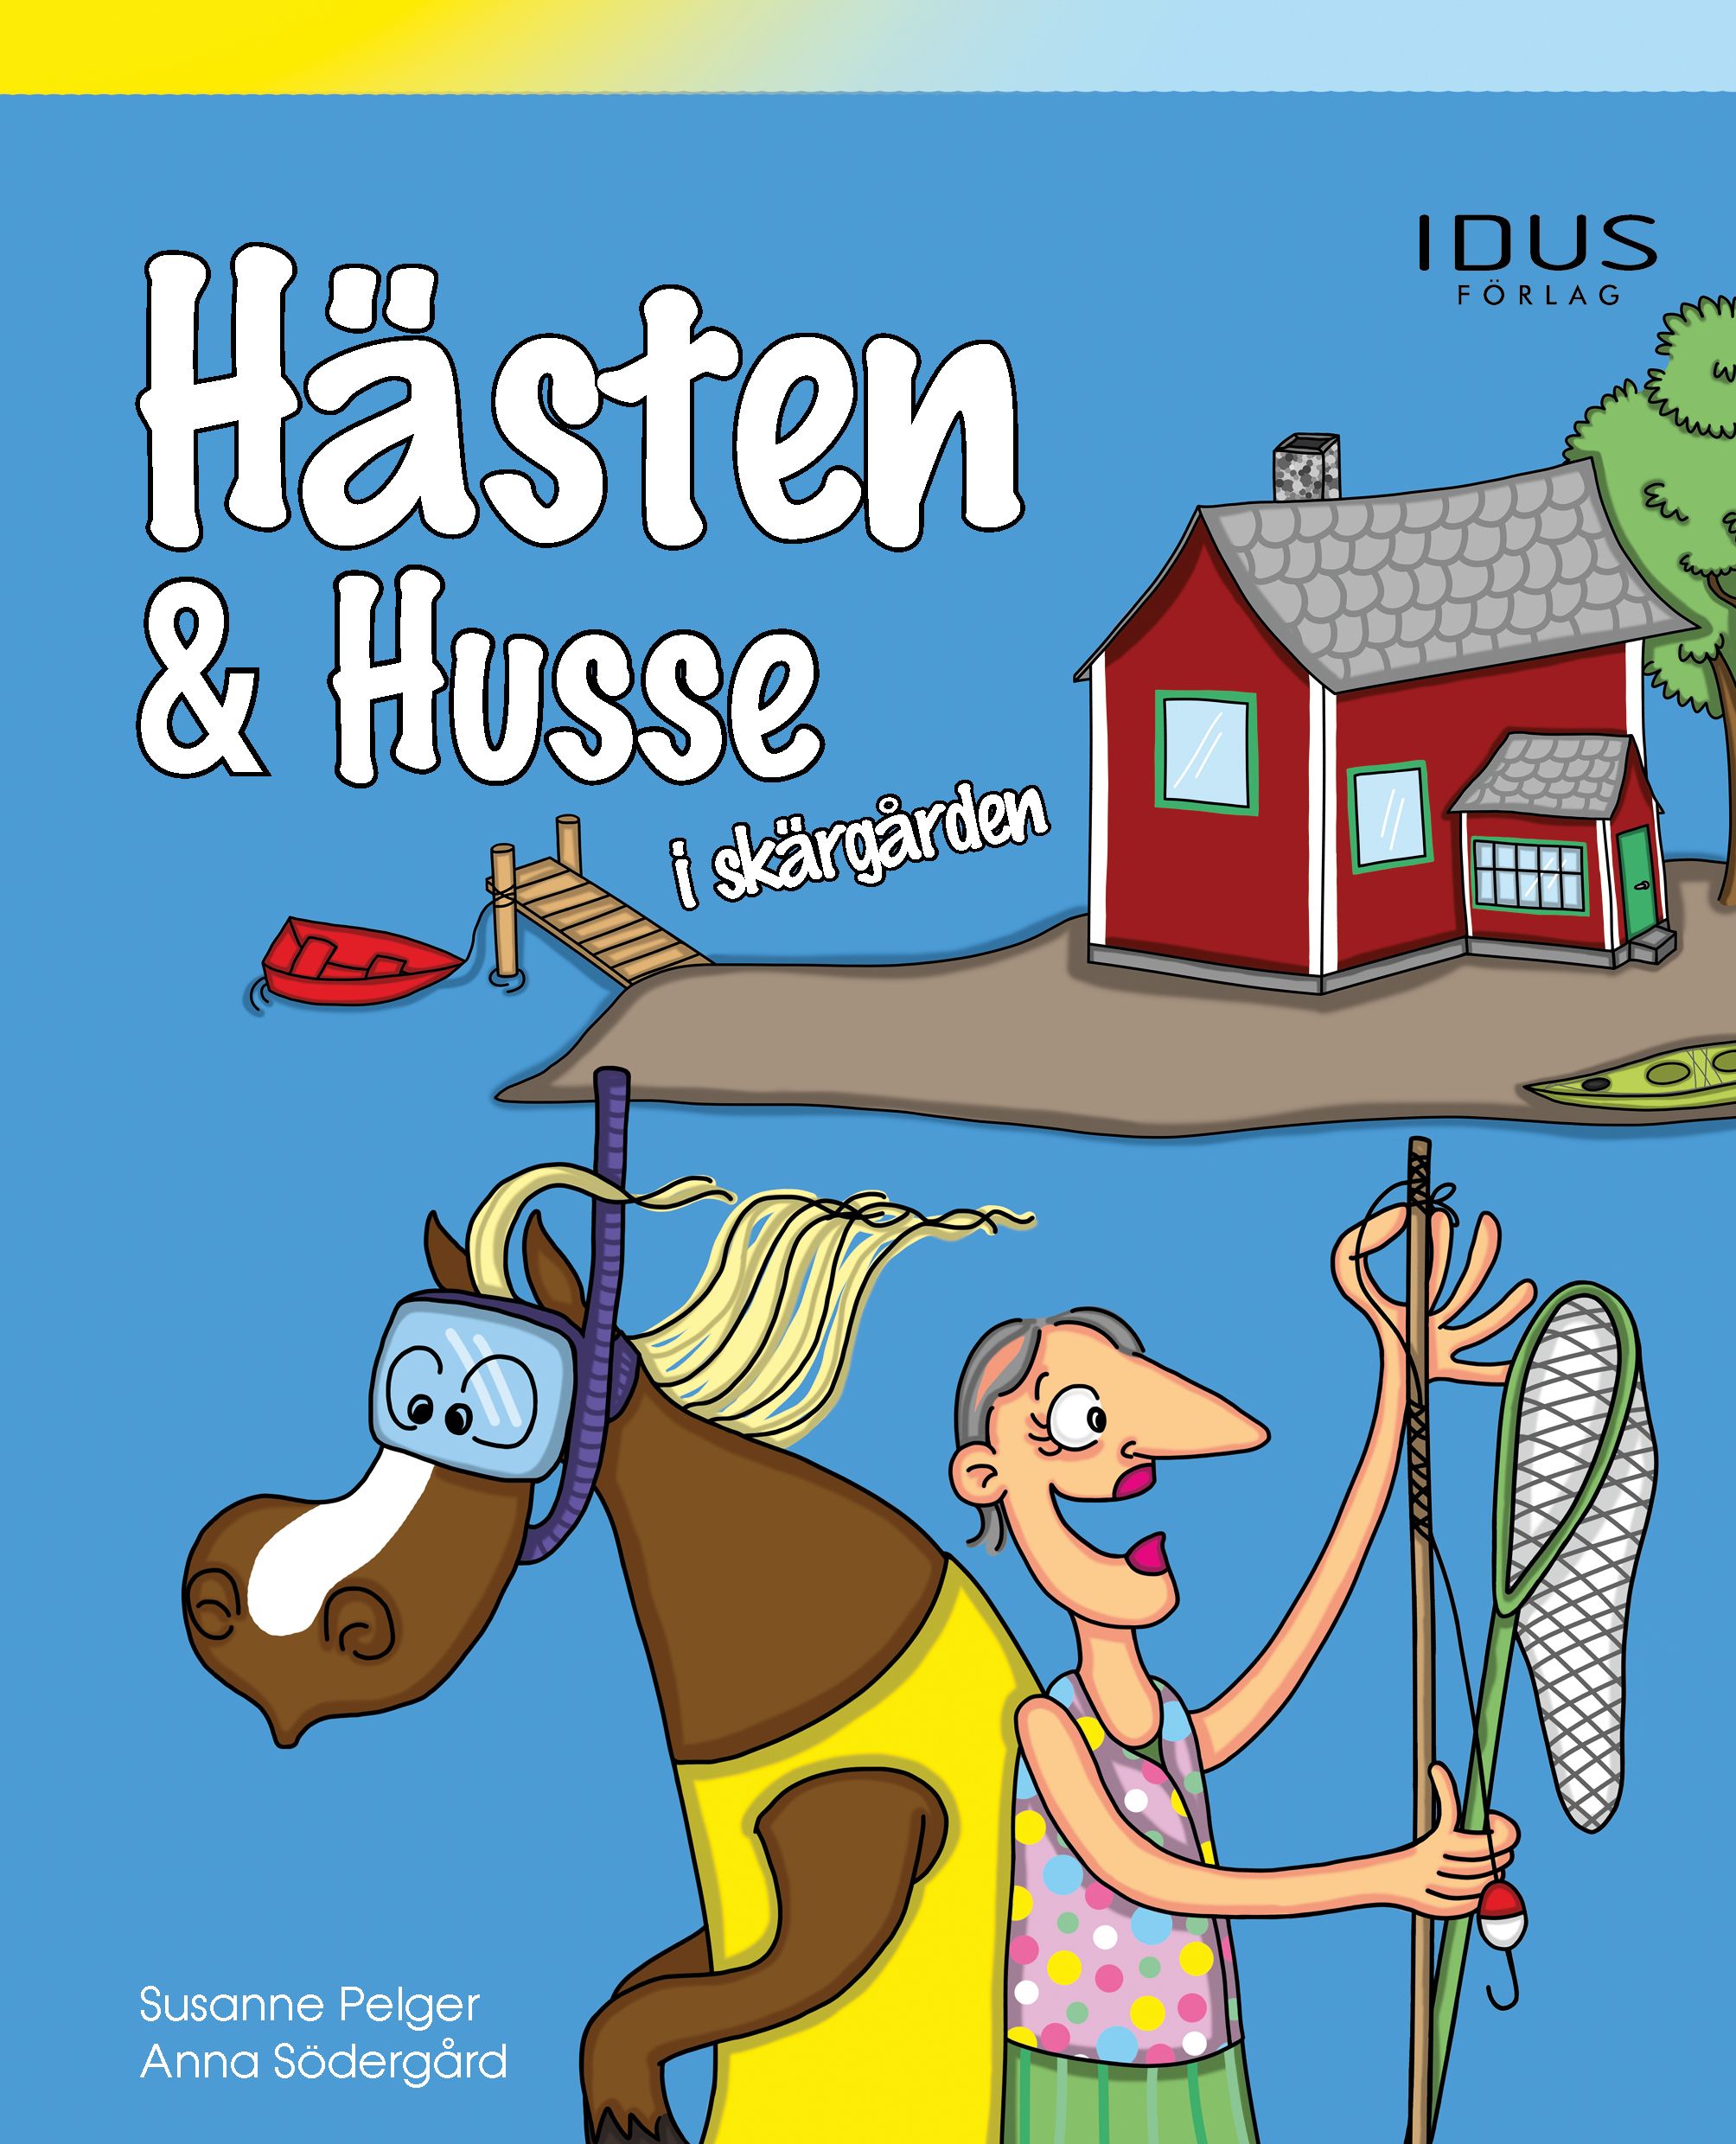 Hästen & Husse i skärgården, e-bog af Susanne Pelger